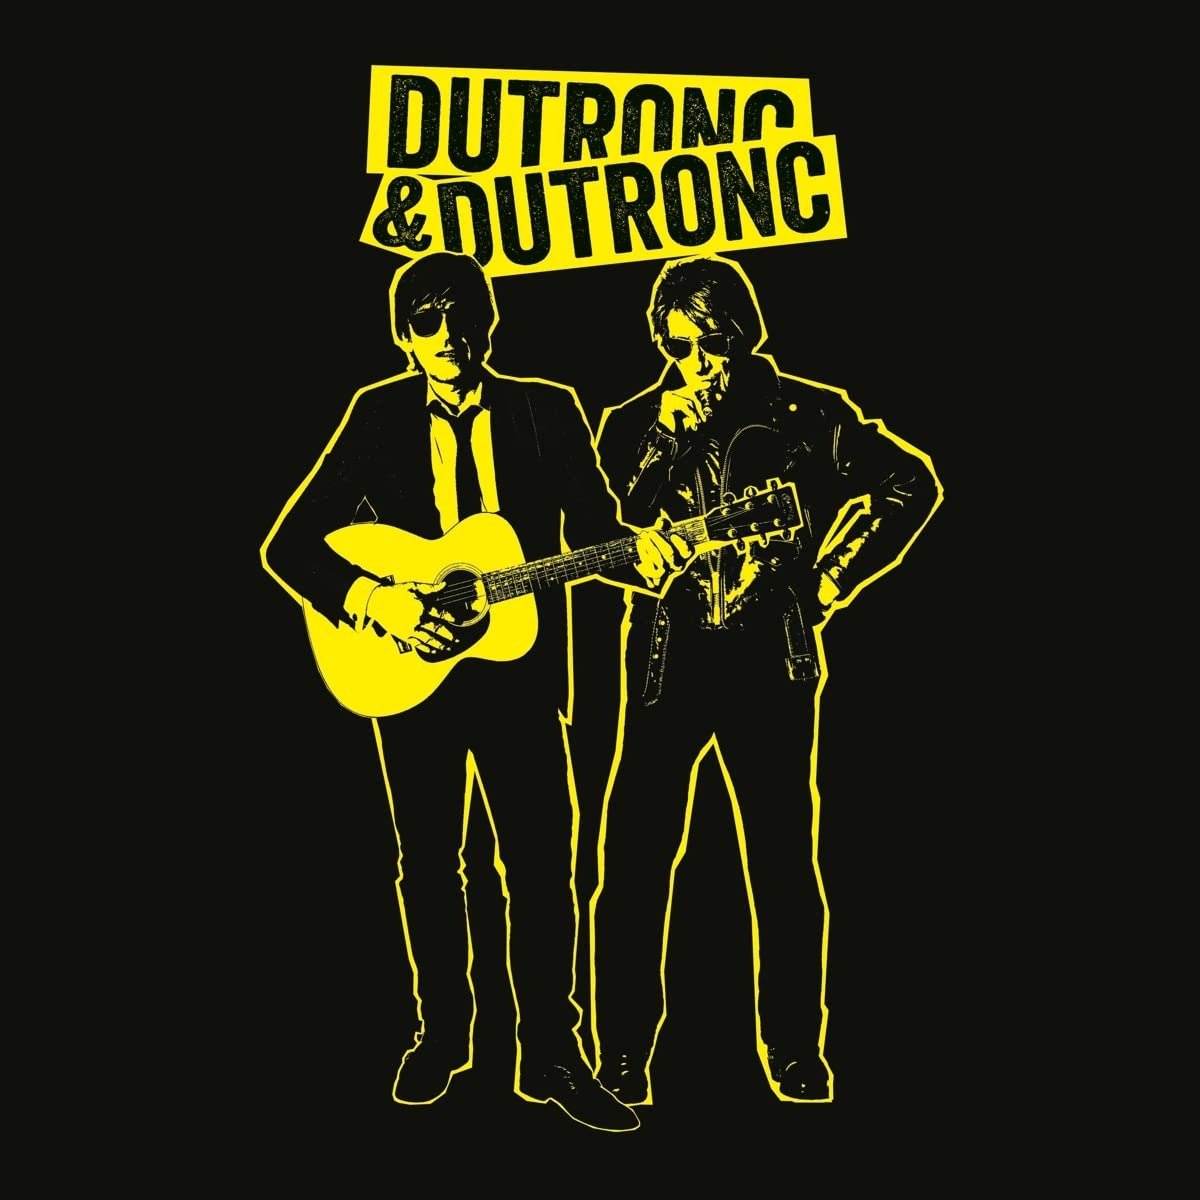 CD Shop - DUTRONC, THOMAS & JACQUES DUTRONC & DUTRONC